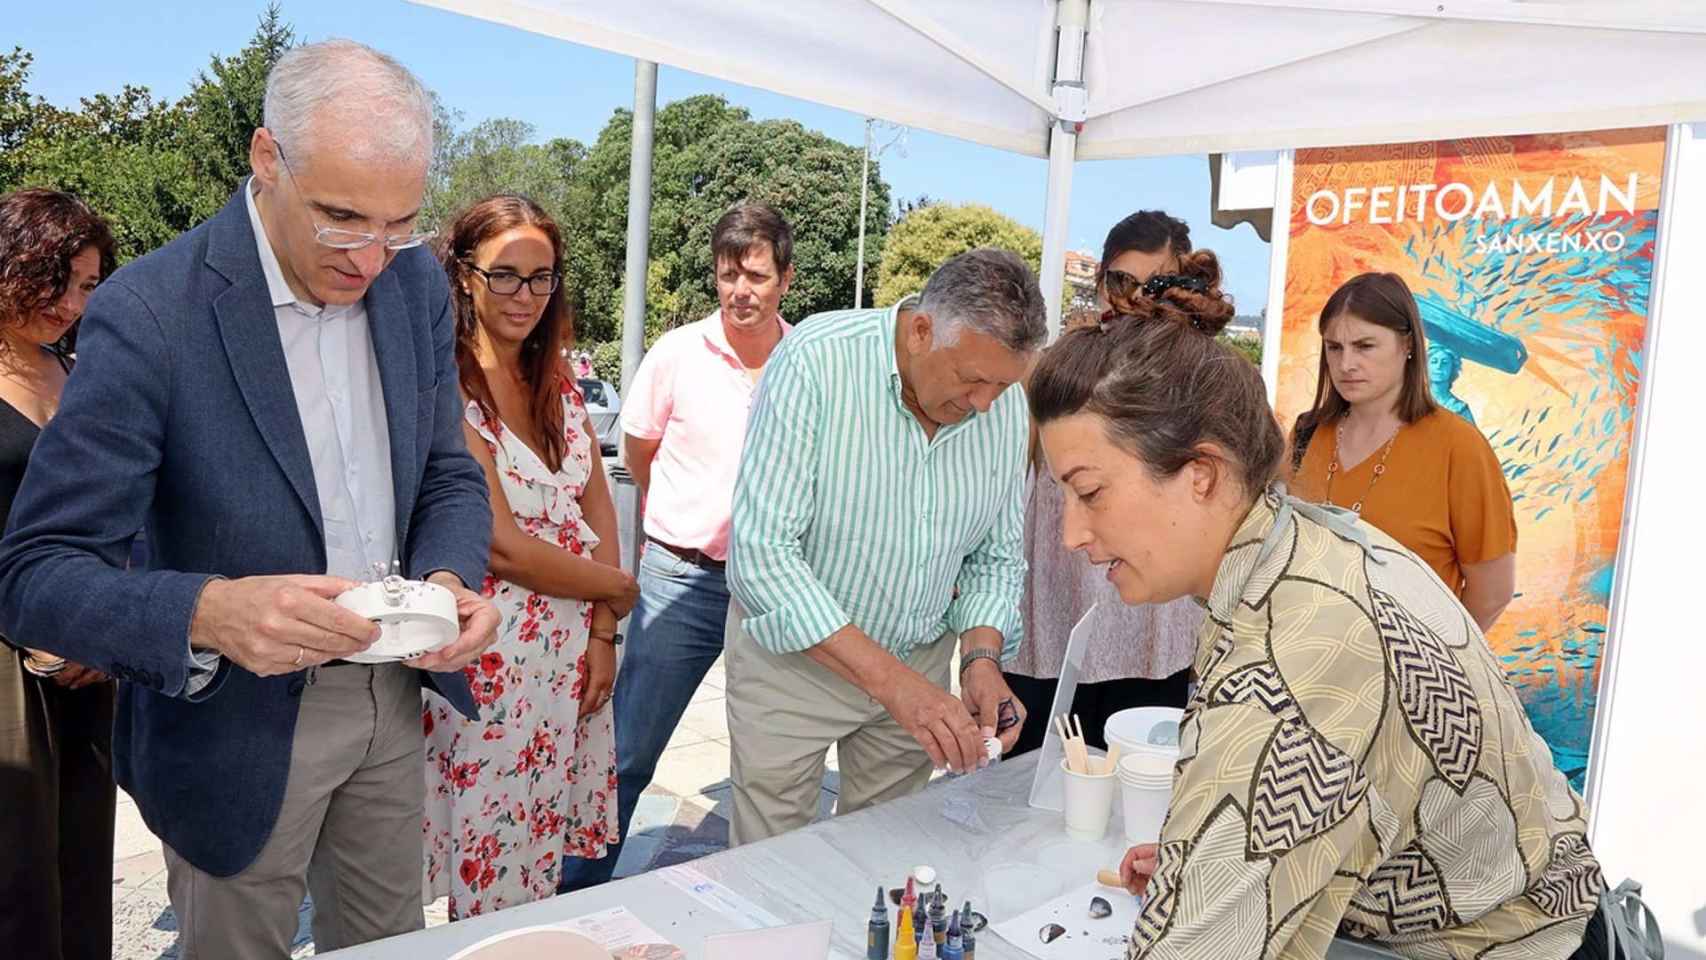 El vicepresidente primero de la Xunta, Francisco Conde, visita a feria ‘Ofeitoaman’